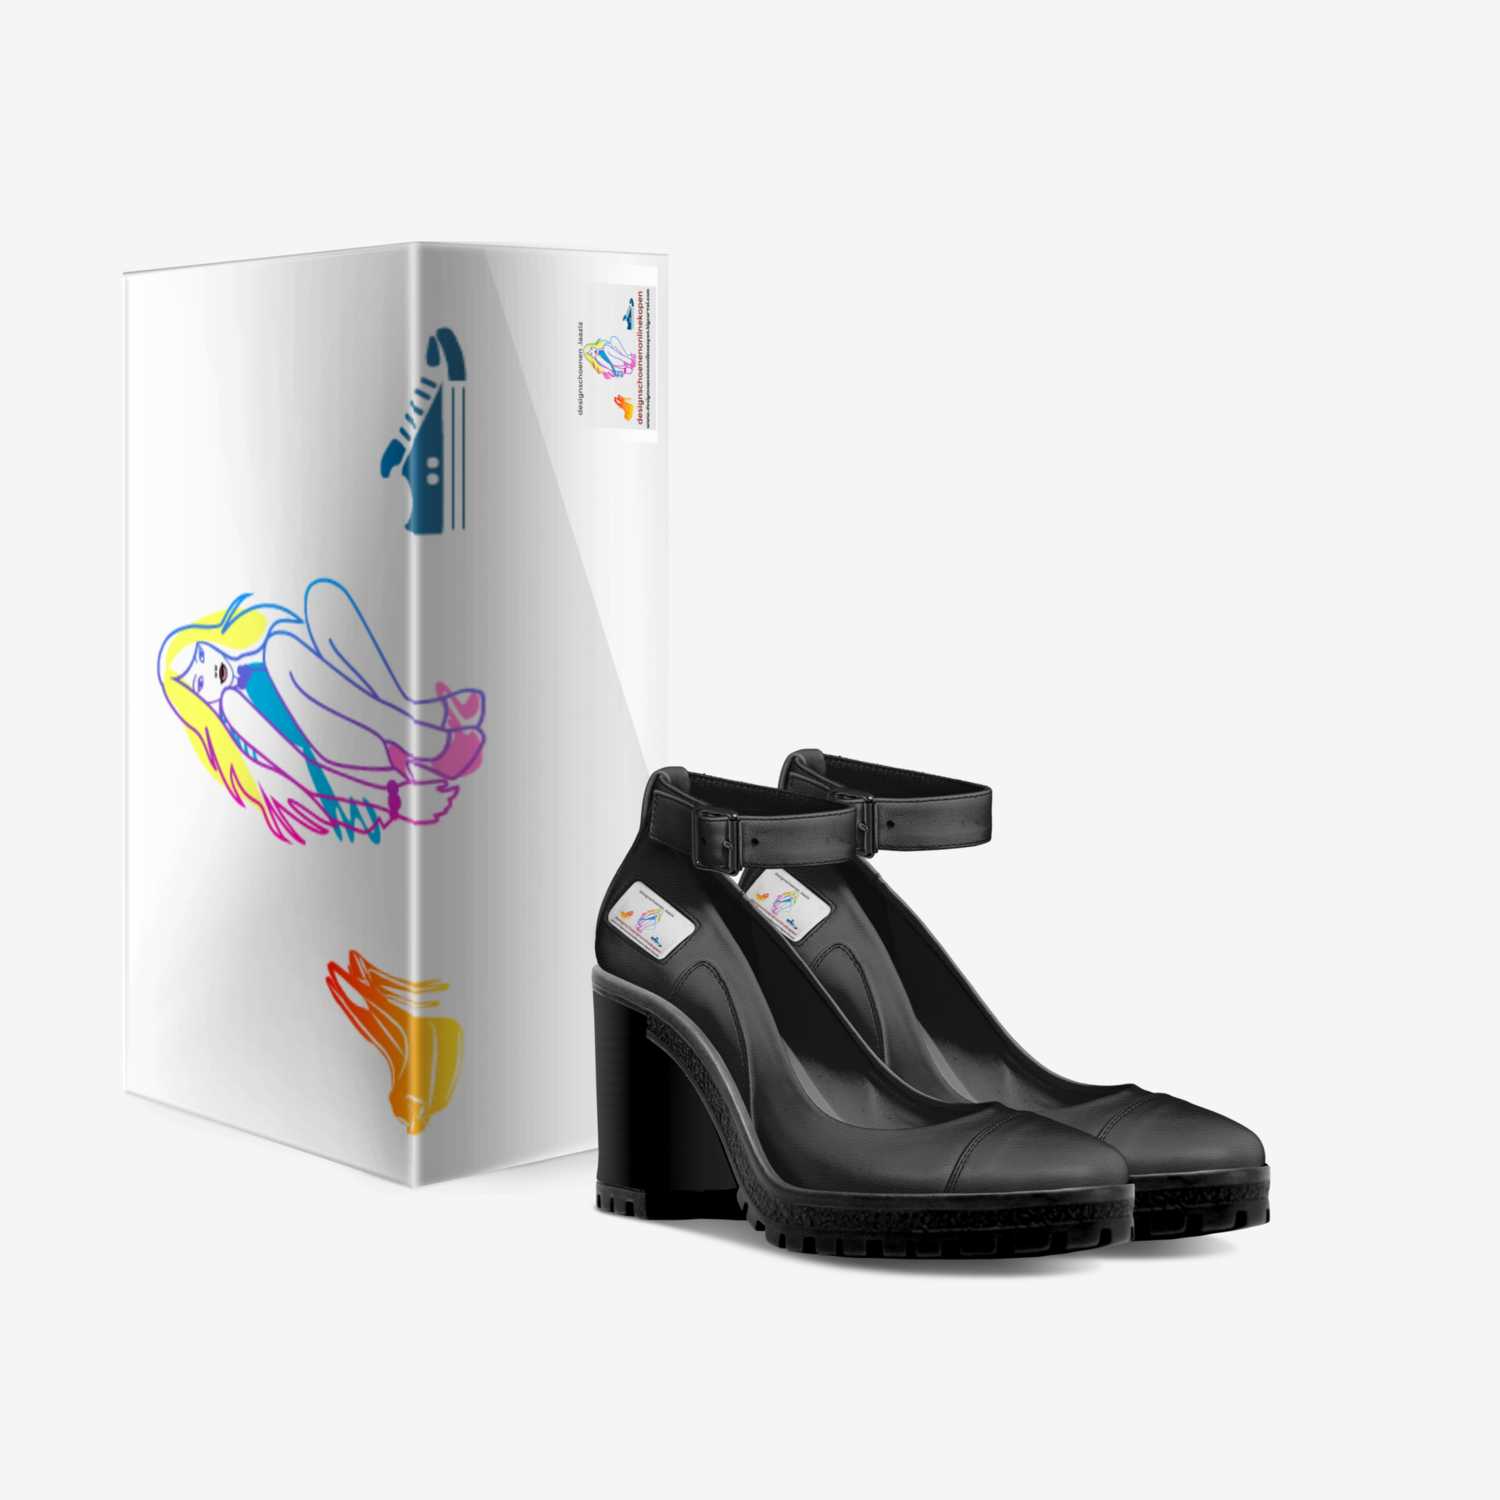 laaziz custom made in Italy shoes by Laaziz Belgium | Box view